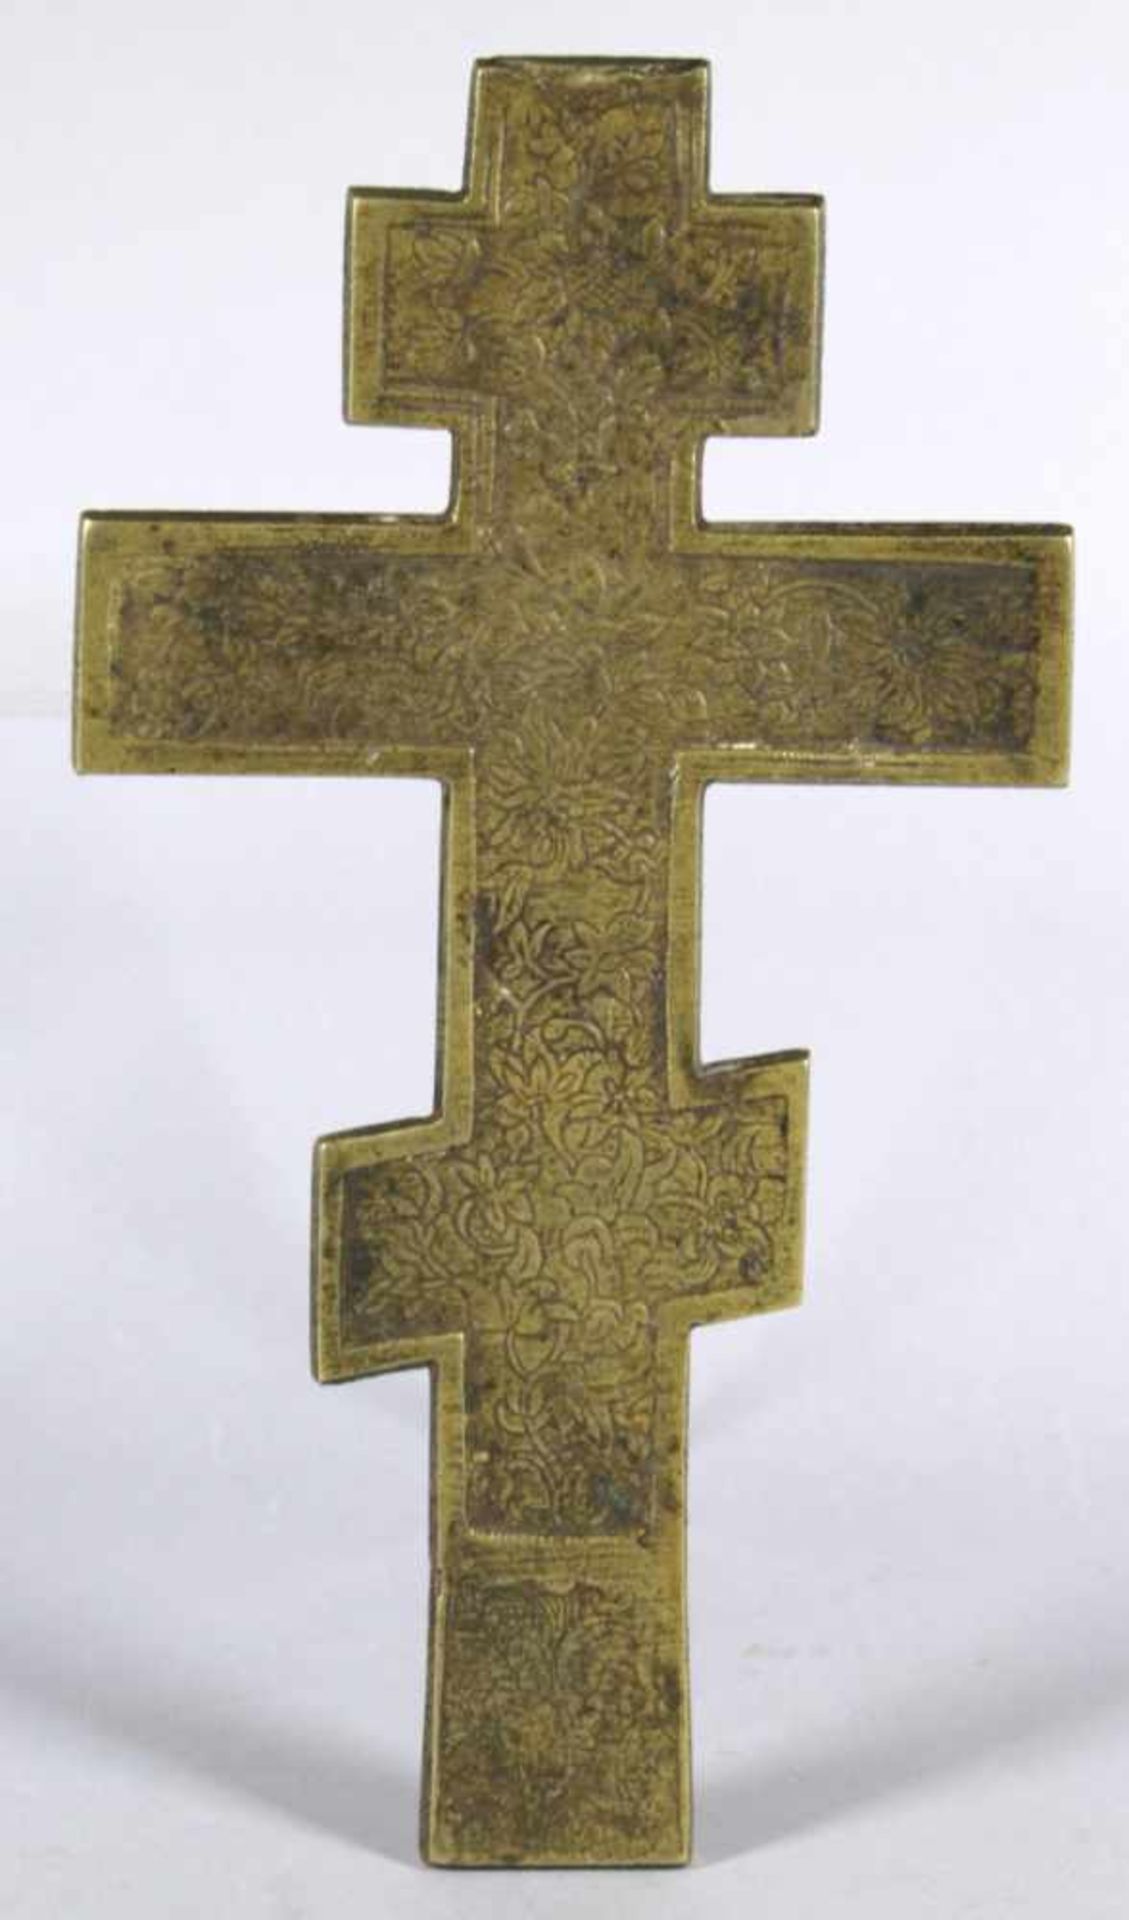 Bronze-Ikonenkreuz, Russland, 19. Jh., flache, orthodoxe Kreuzform mit reliefiertem CorpusChristi, - Bild 2 aus 2